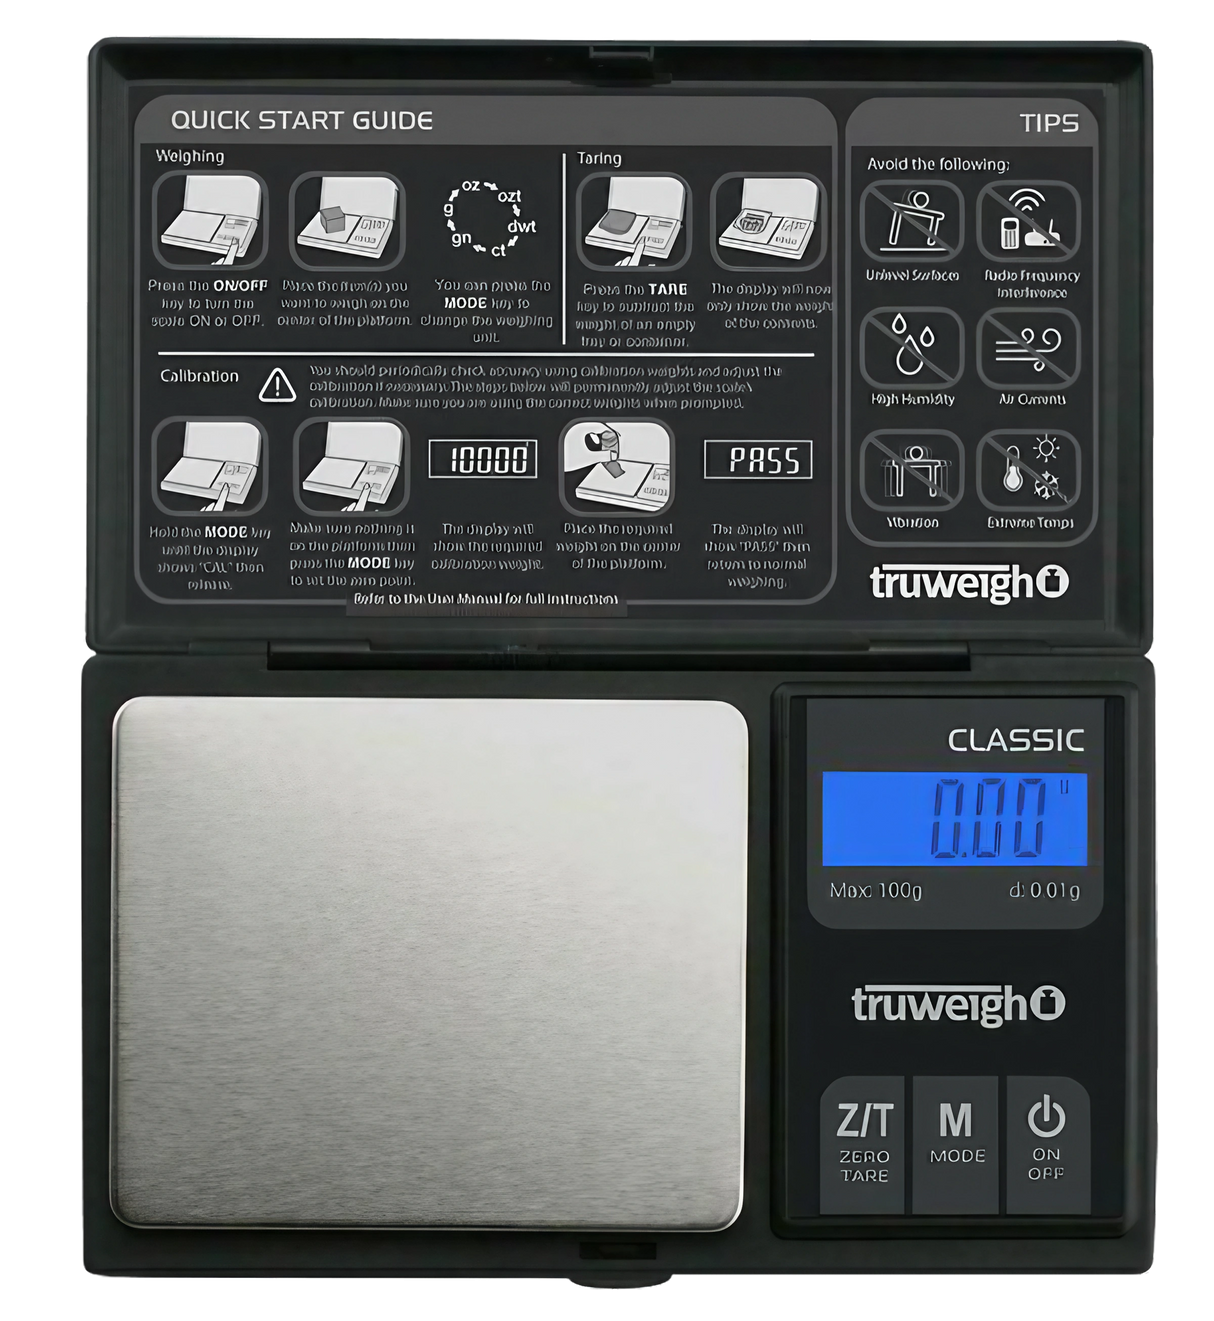 Digital Pocket Scale 100g x 0.01g